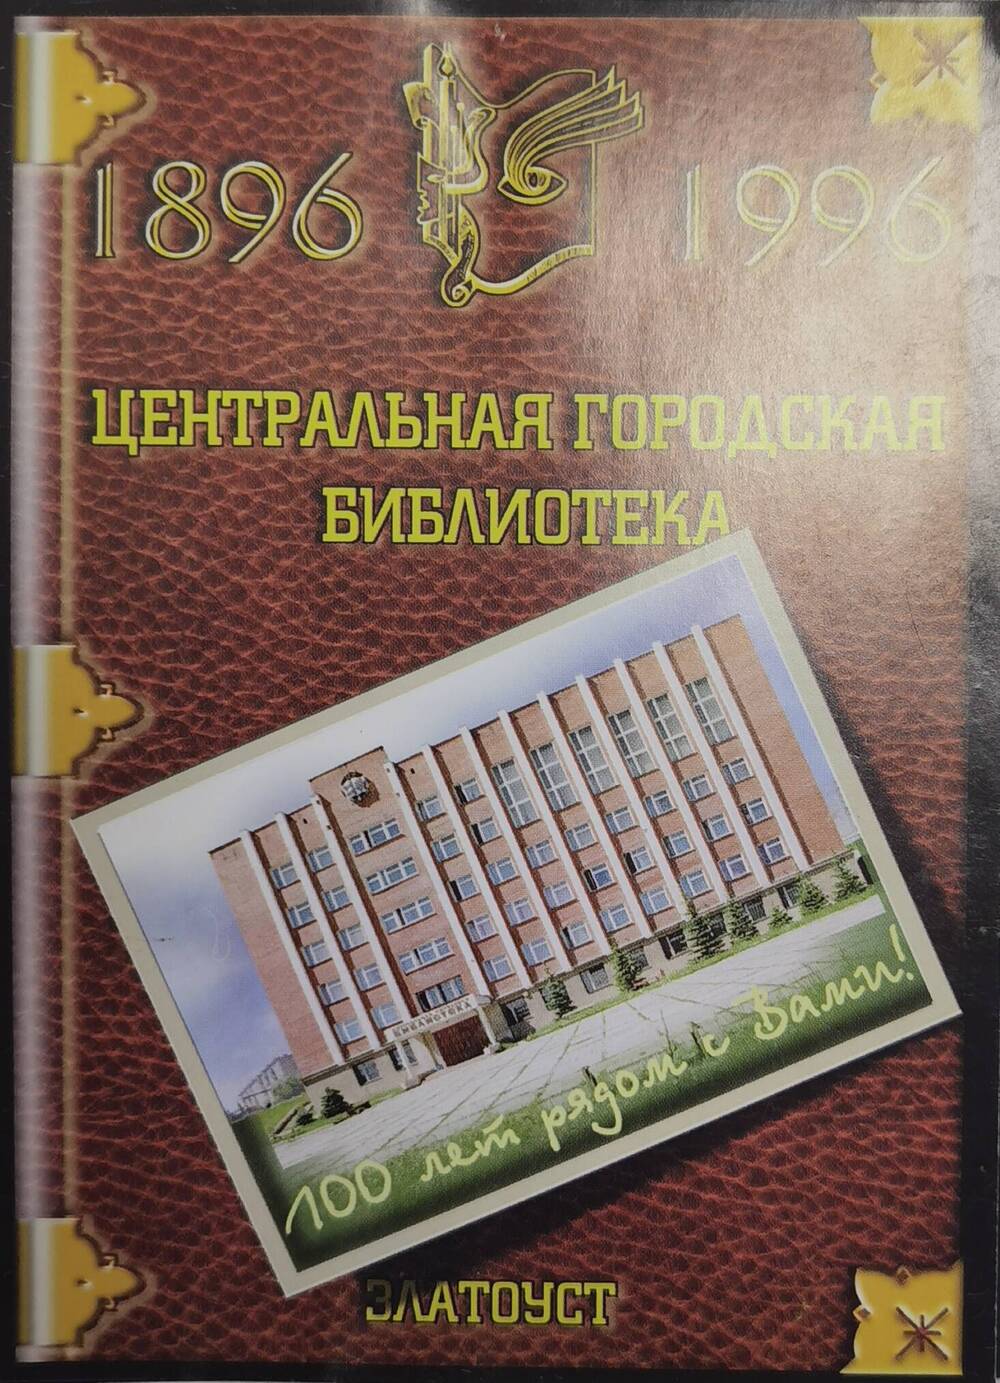 Открытка рекламная Центральной городской библиотеки, выпущенная к 100-летию библиотеки, 1996 г.